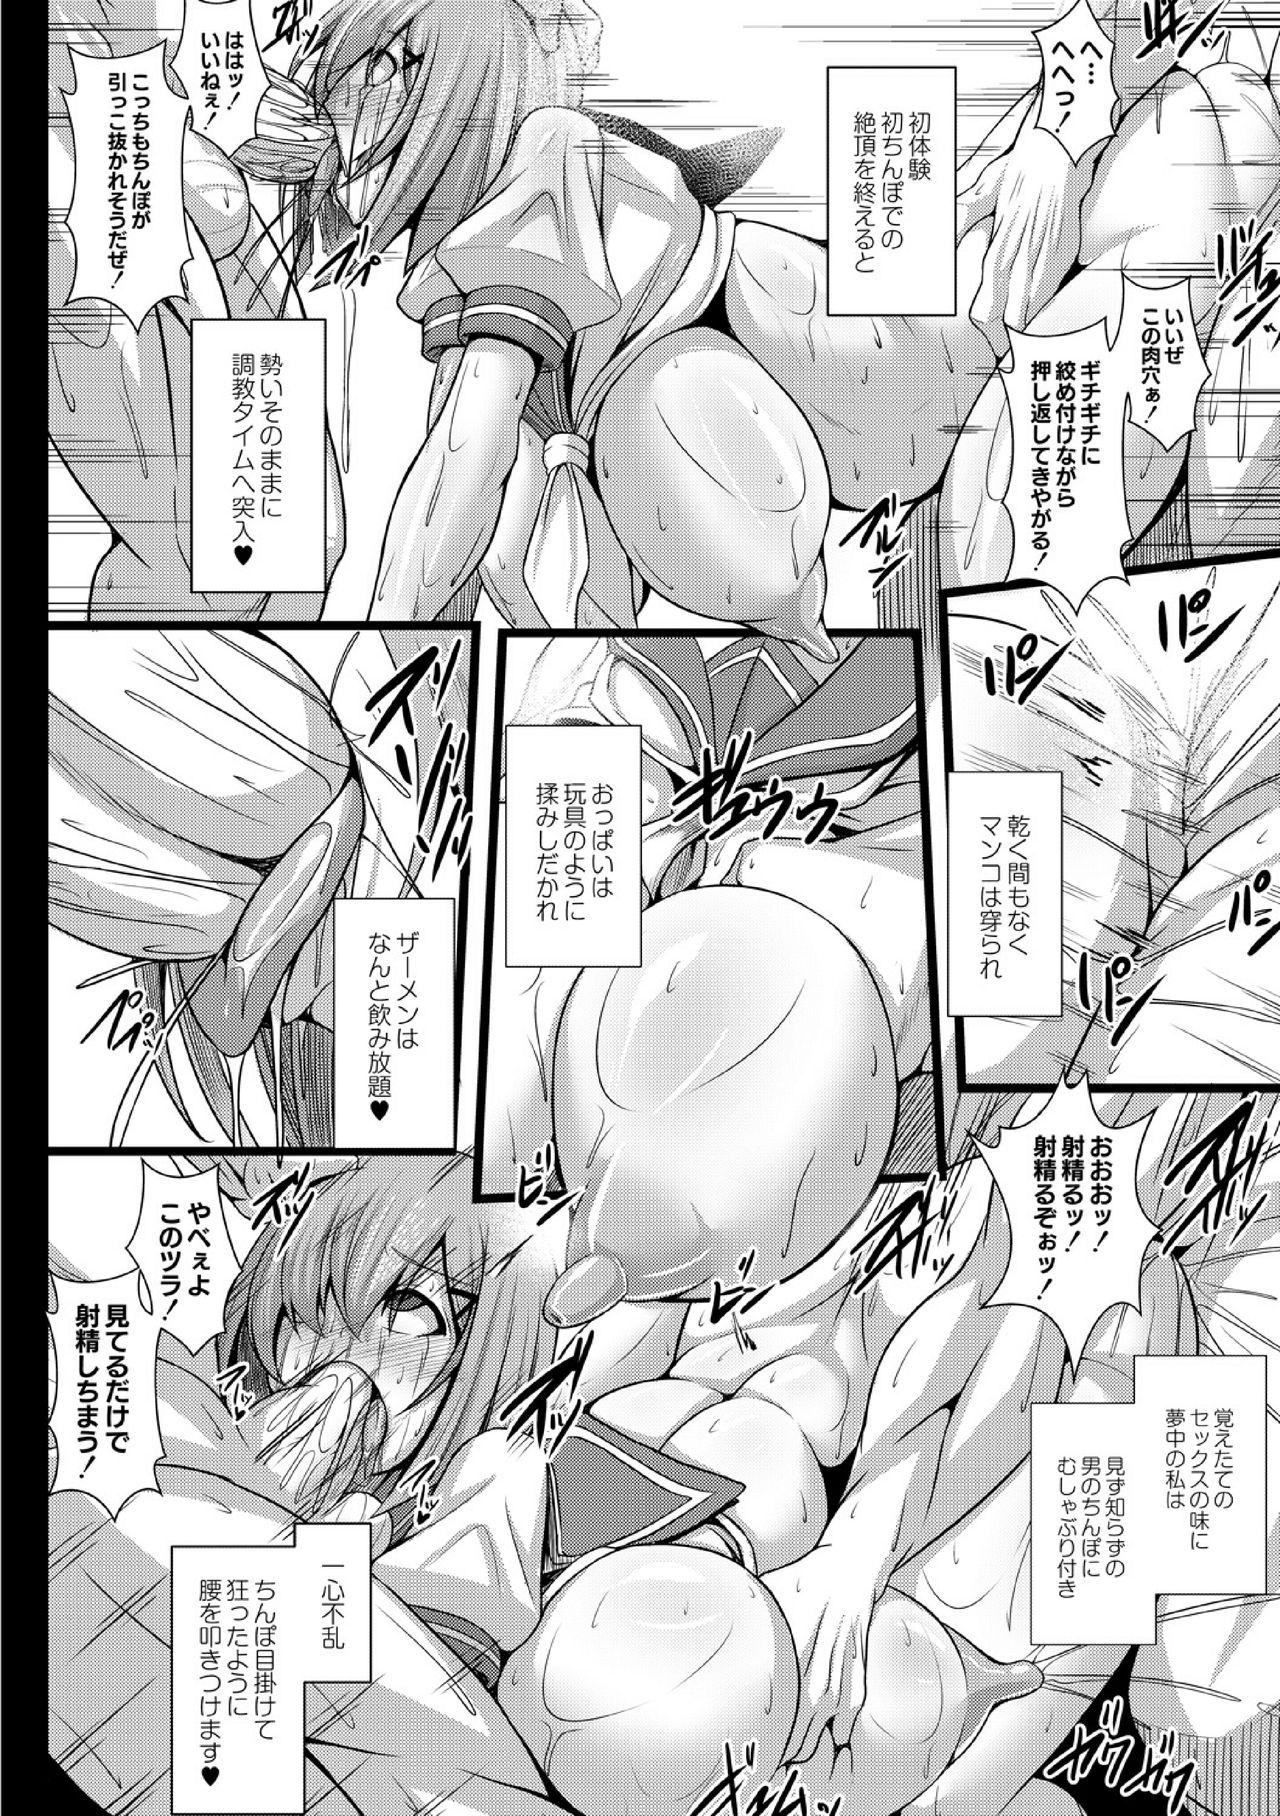 3some Kangoku chokyo shima 1-wa Full - Page 6